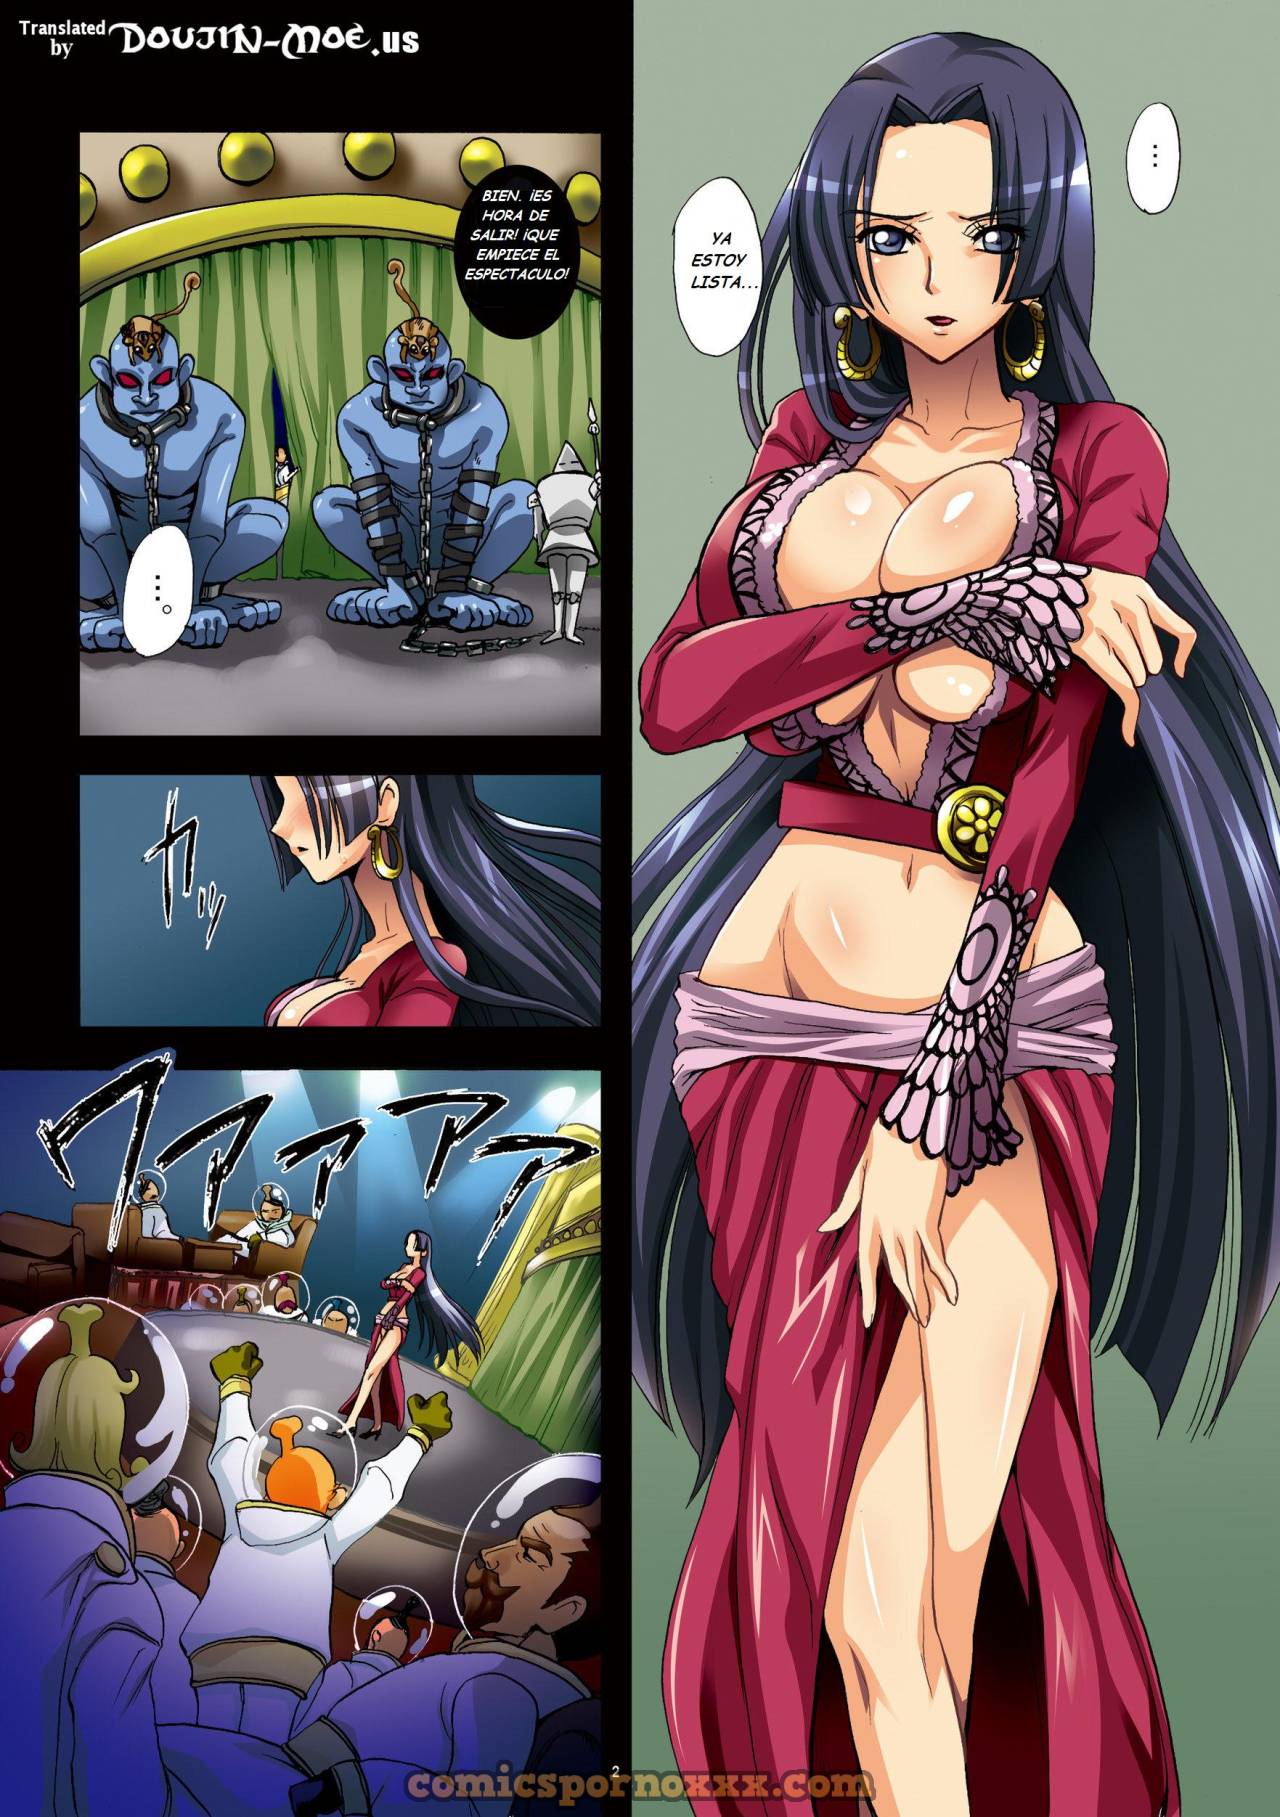 Slave Empress Snake Rape Strip Show - 2 - Comics Porno - Hentai Manga - Cartoon XXX